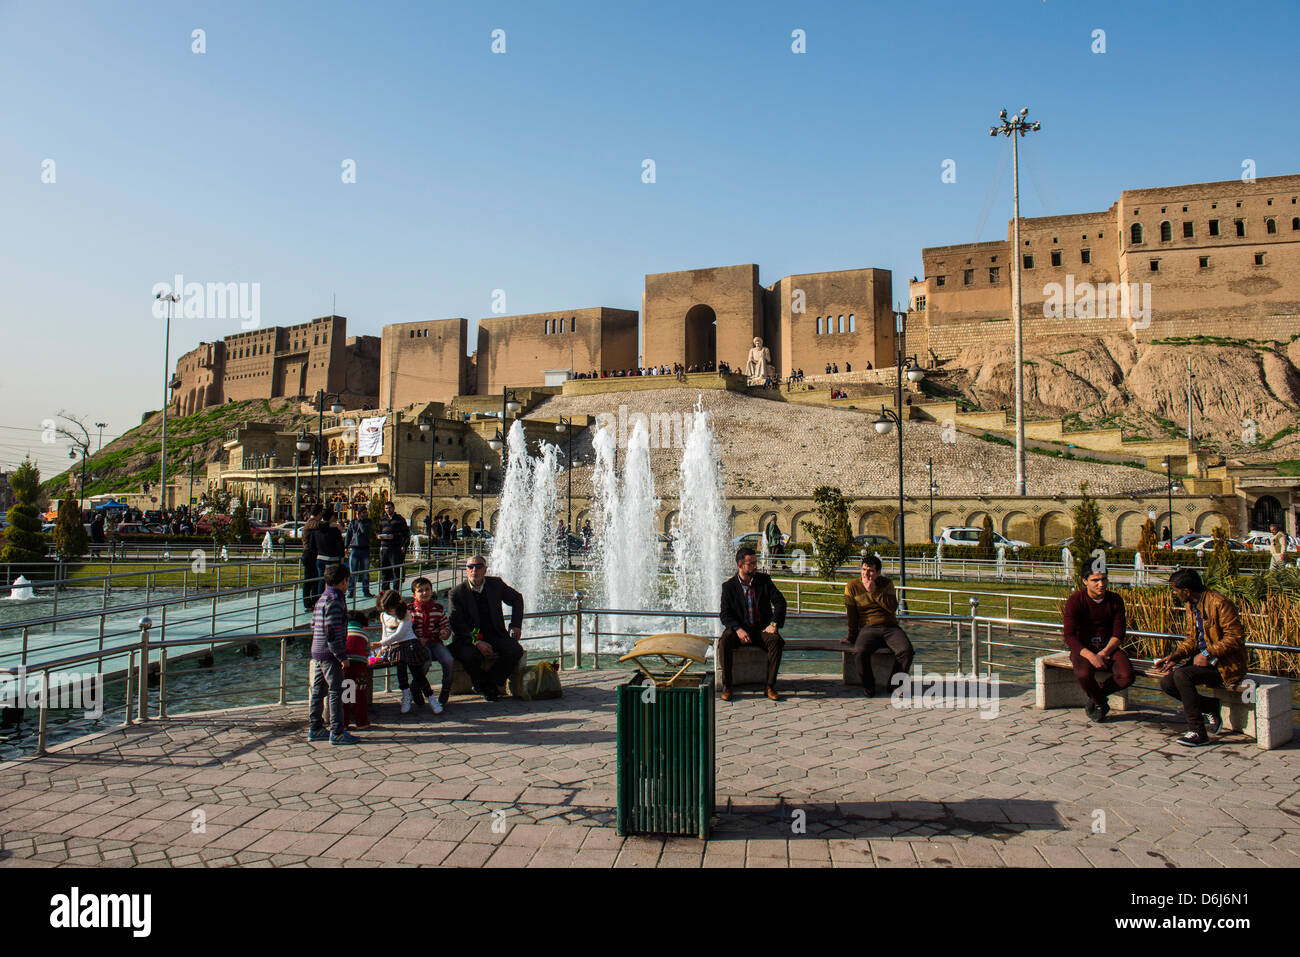 Enorme plaza con fuentes de agua debajo de la ciudadela de Erbil (Hawler), capital de Irak, Kurdistán, Iraq, Oriente Medio Foto de stock